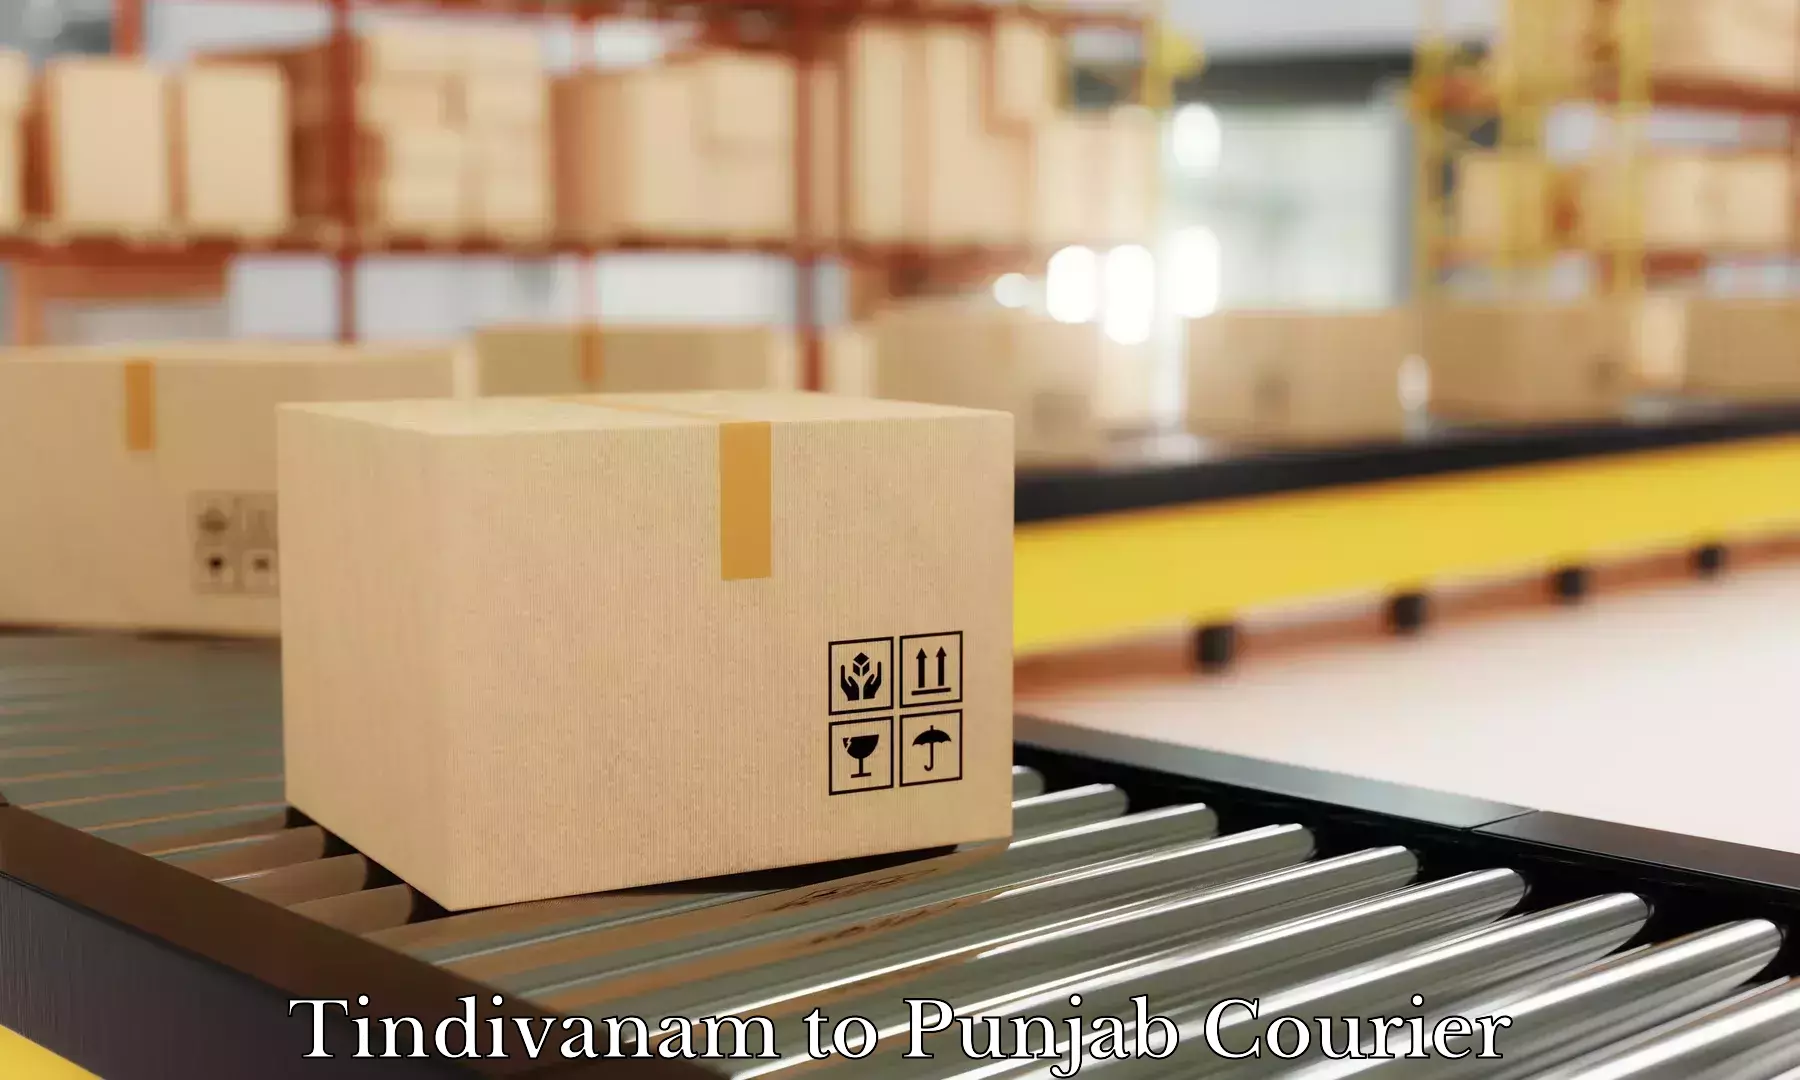 Baggage relocation service Tindivanam to Ludhiana